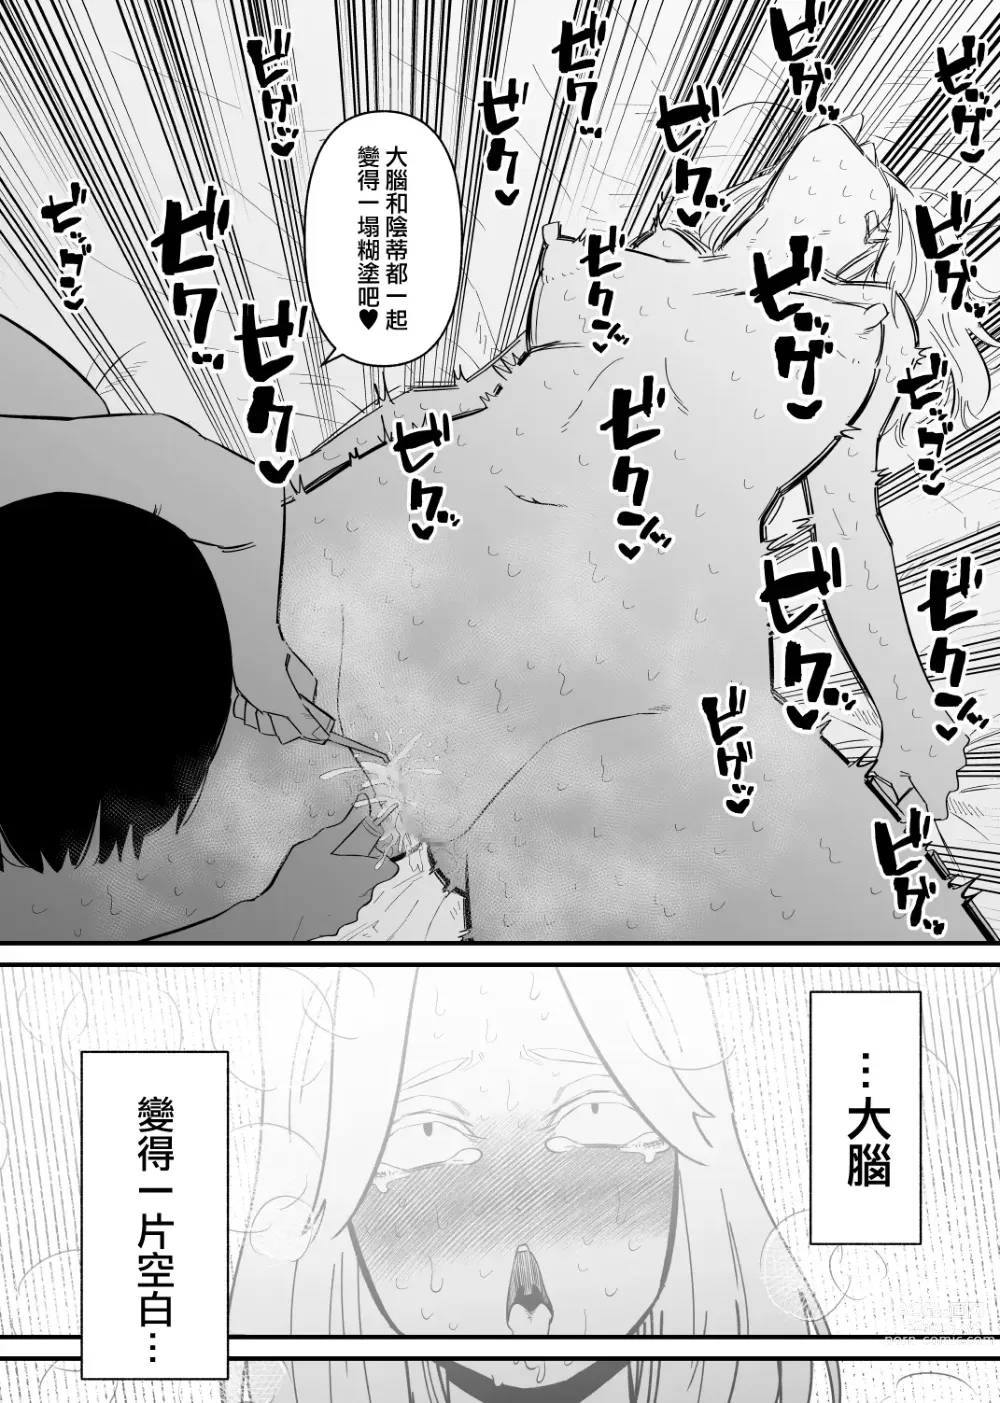 Page 23 of doujinshi 被後輩陰蒂調教後徹底墮落了